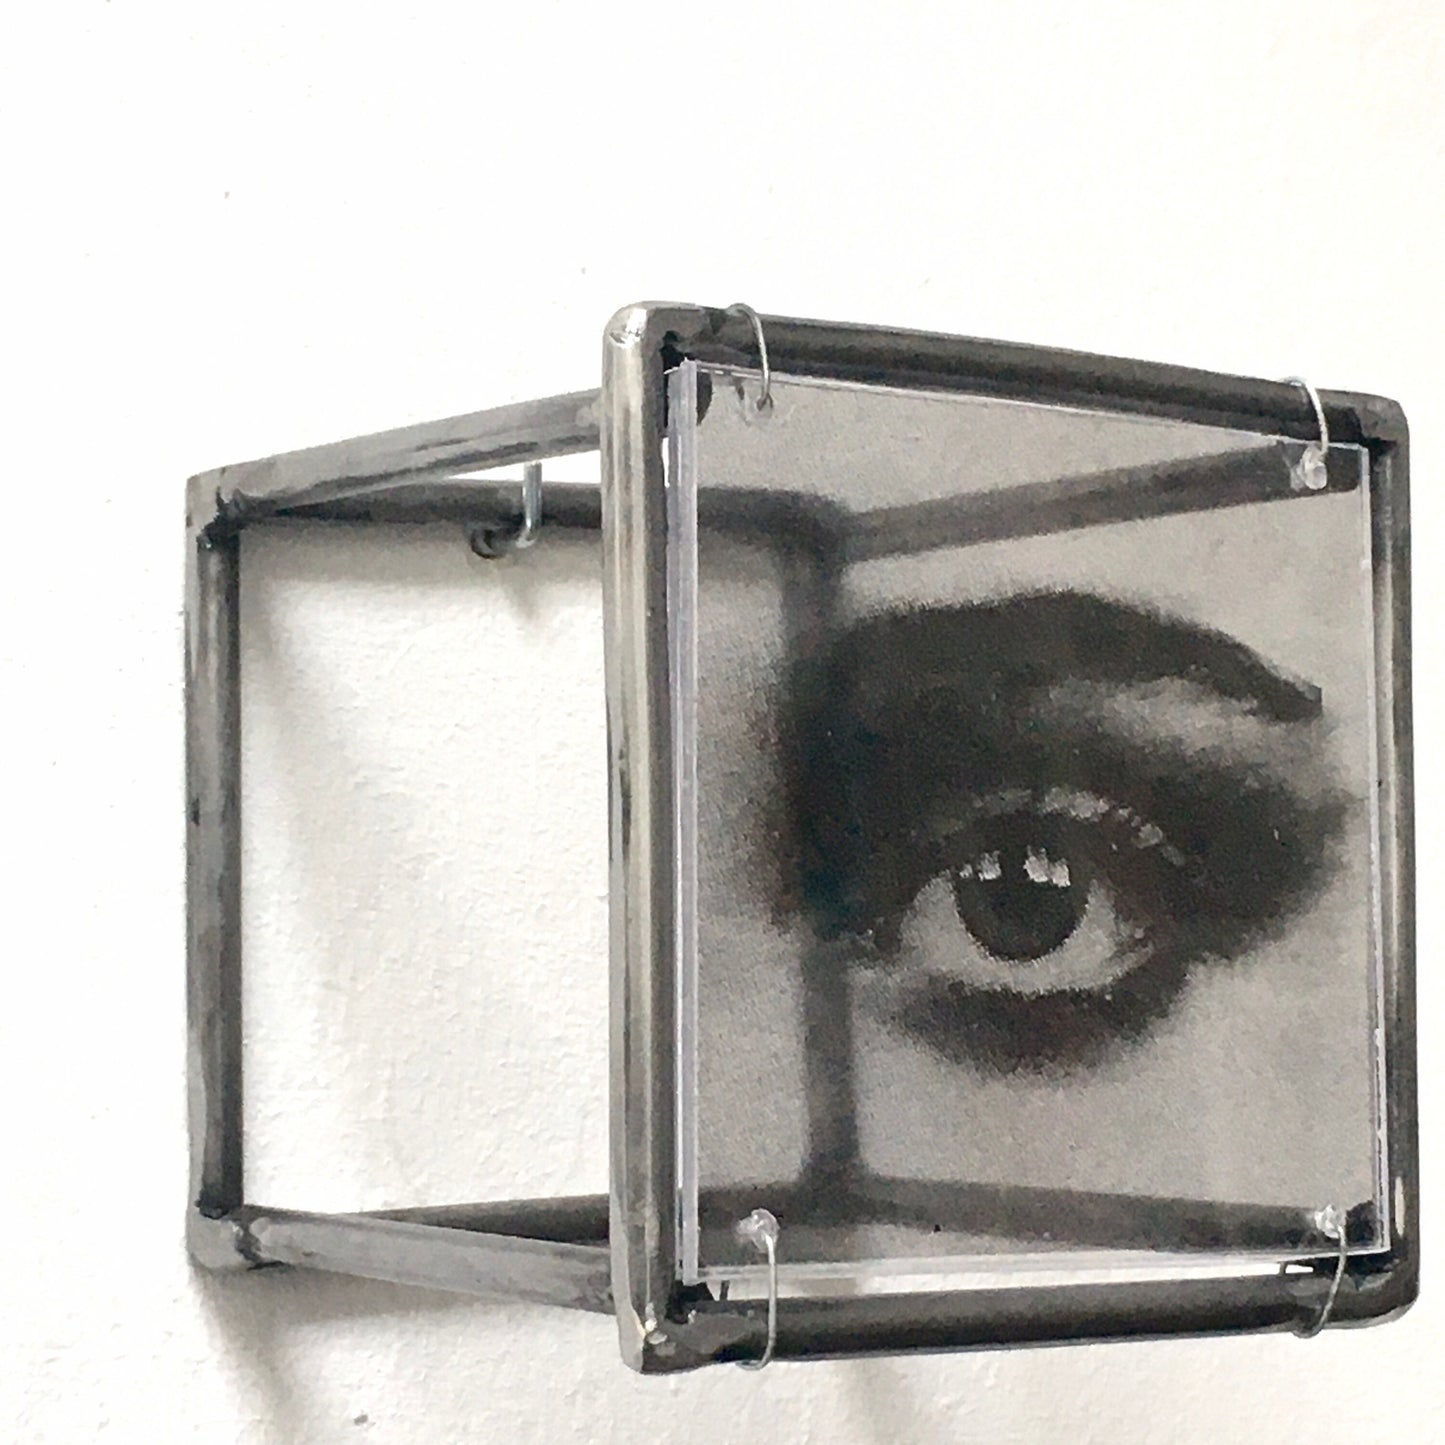 Eye, wall art sculpture, metal, art print and plexiglass, Mixed media art object. Ideal gift for a couple. - artandshadow